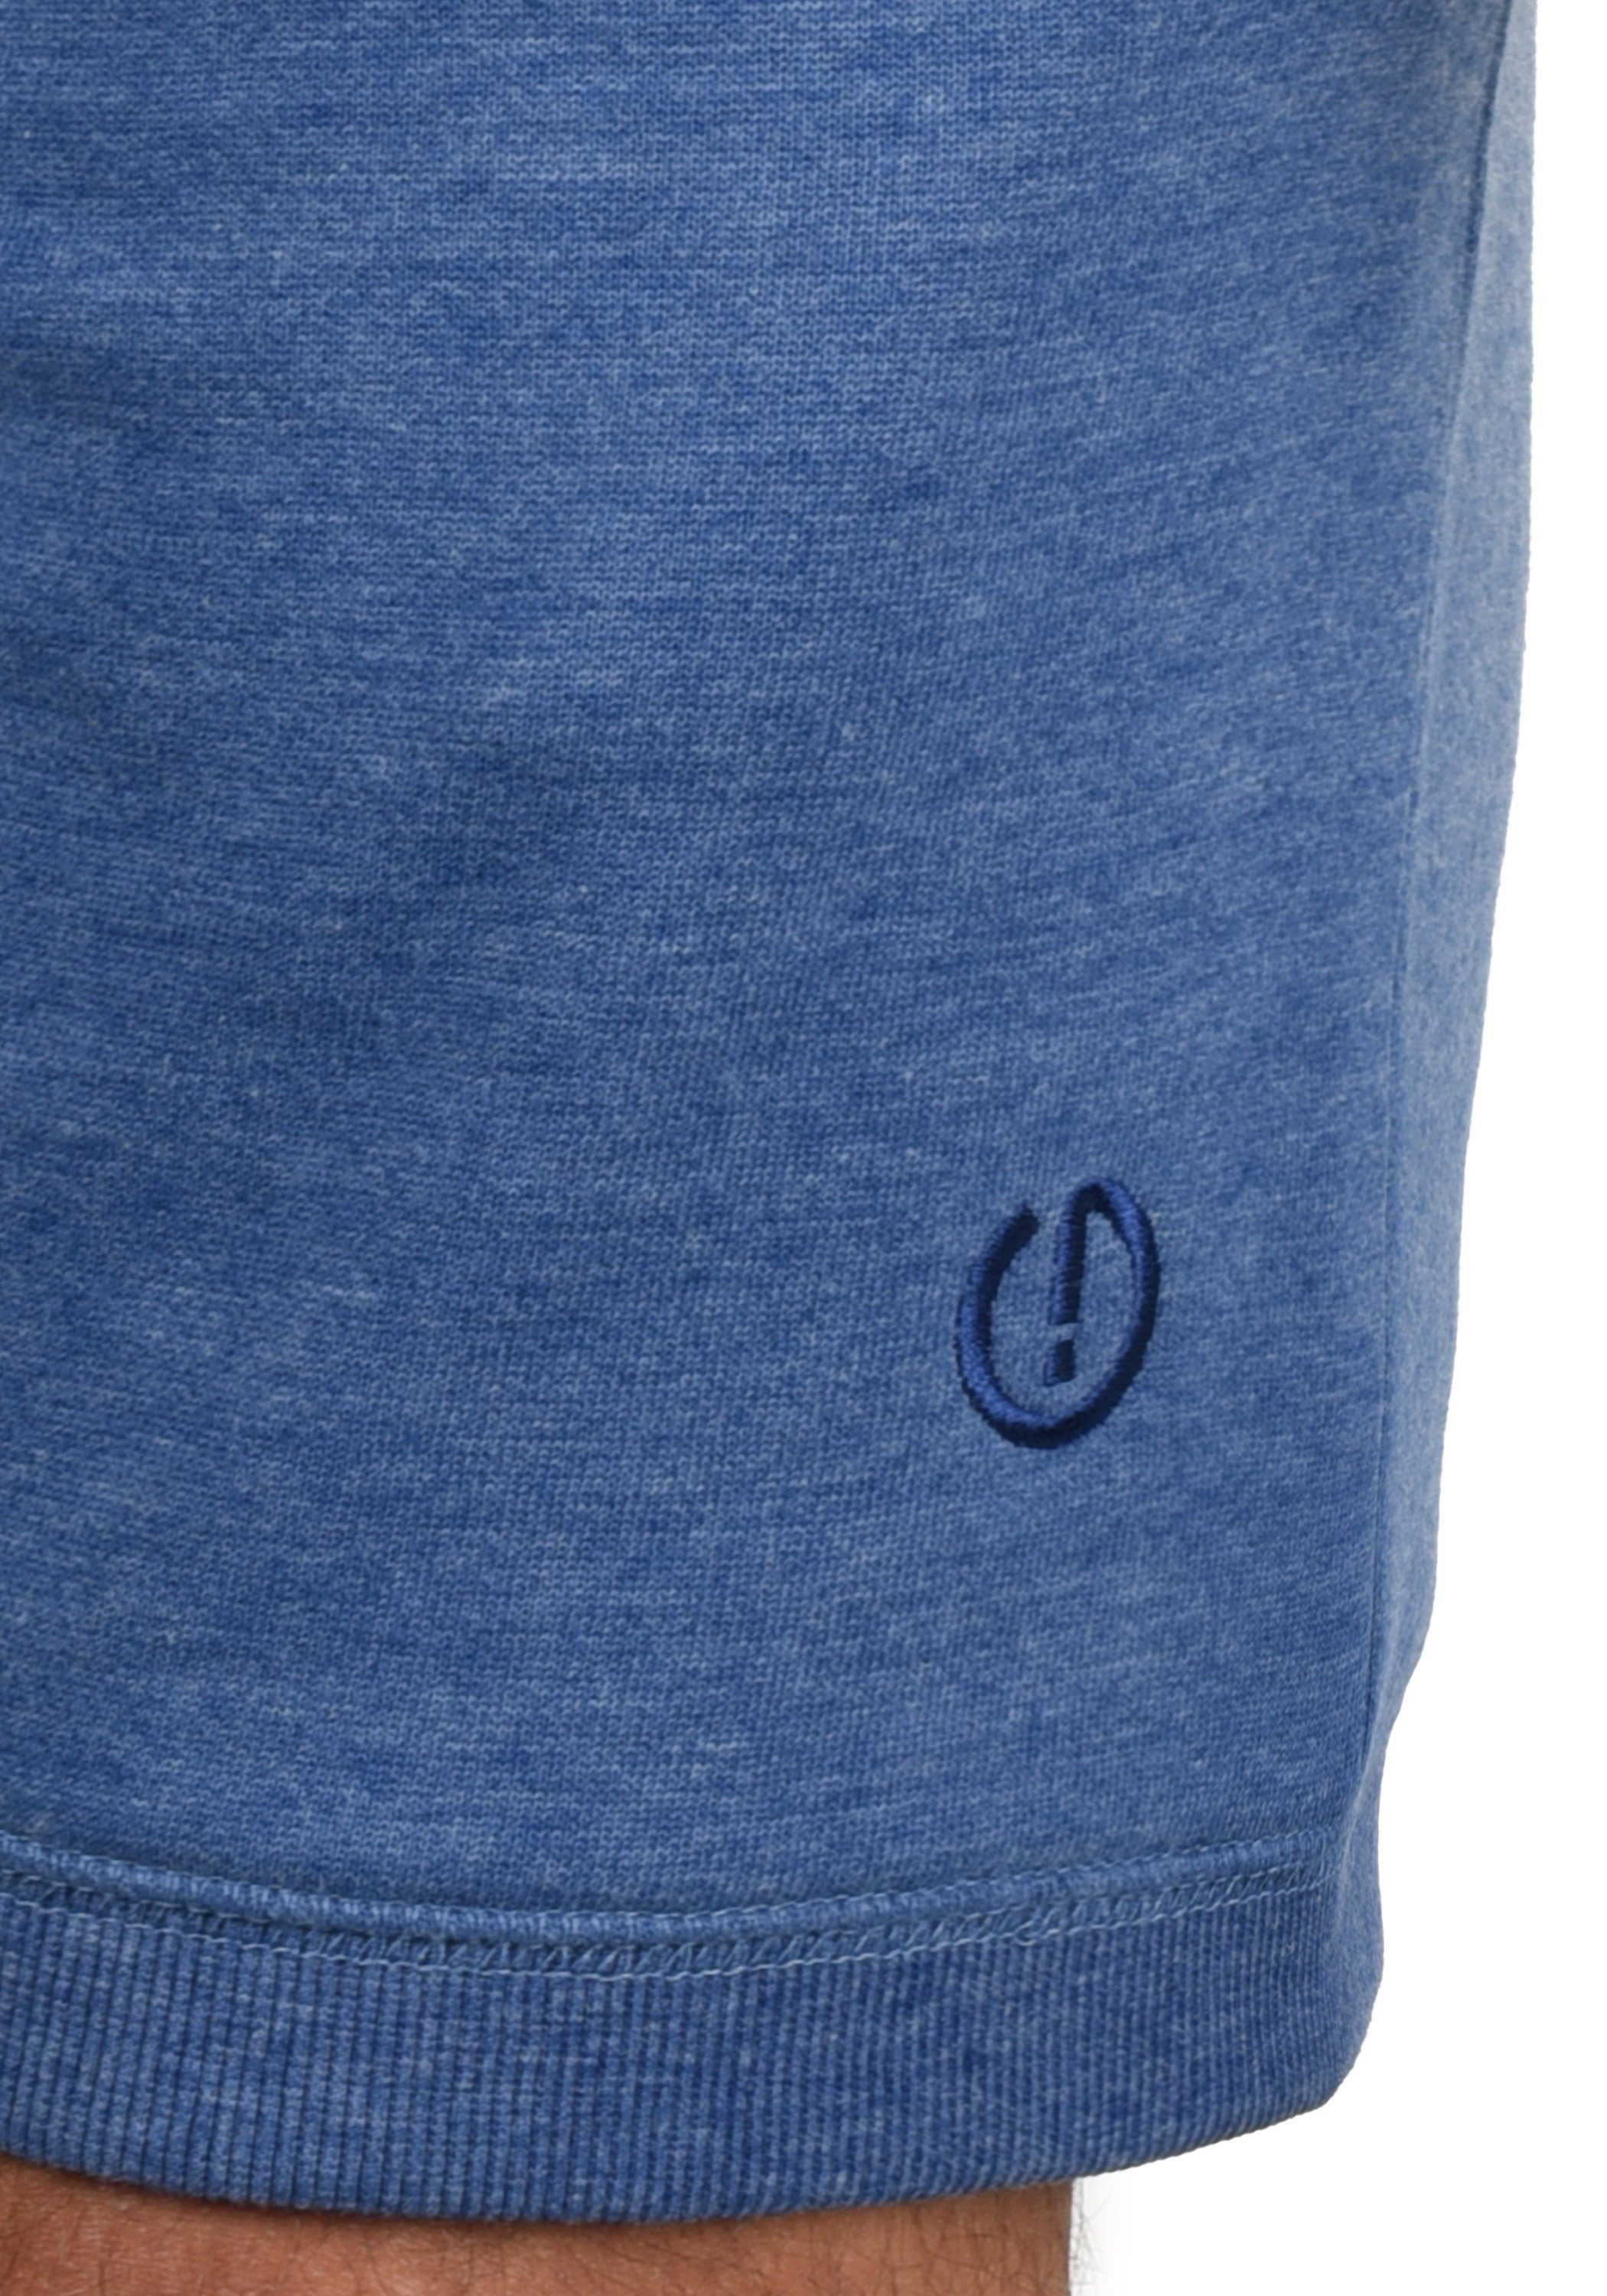 Faded kurze SDBennShorts Blue (1542M) Melange Hose mit Kontrastkordeln !Solid breiten Sweatshorts